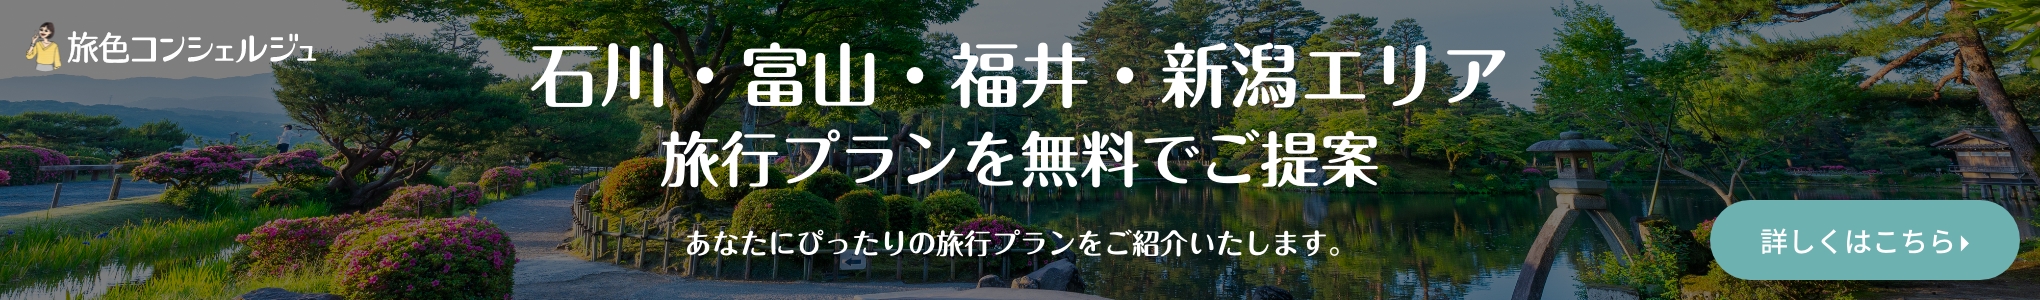 石川・富山・福井・新潟エリアの旅行プランを無料でご提案 あなたにぴったりの旅行プランをご紹介いたします。詳しくはこちら